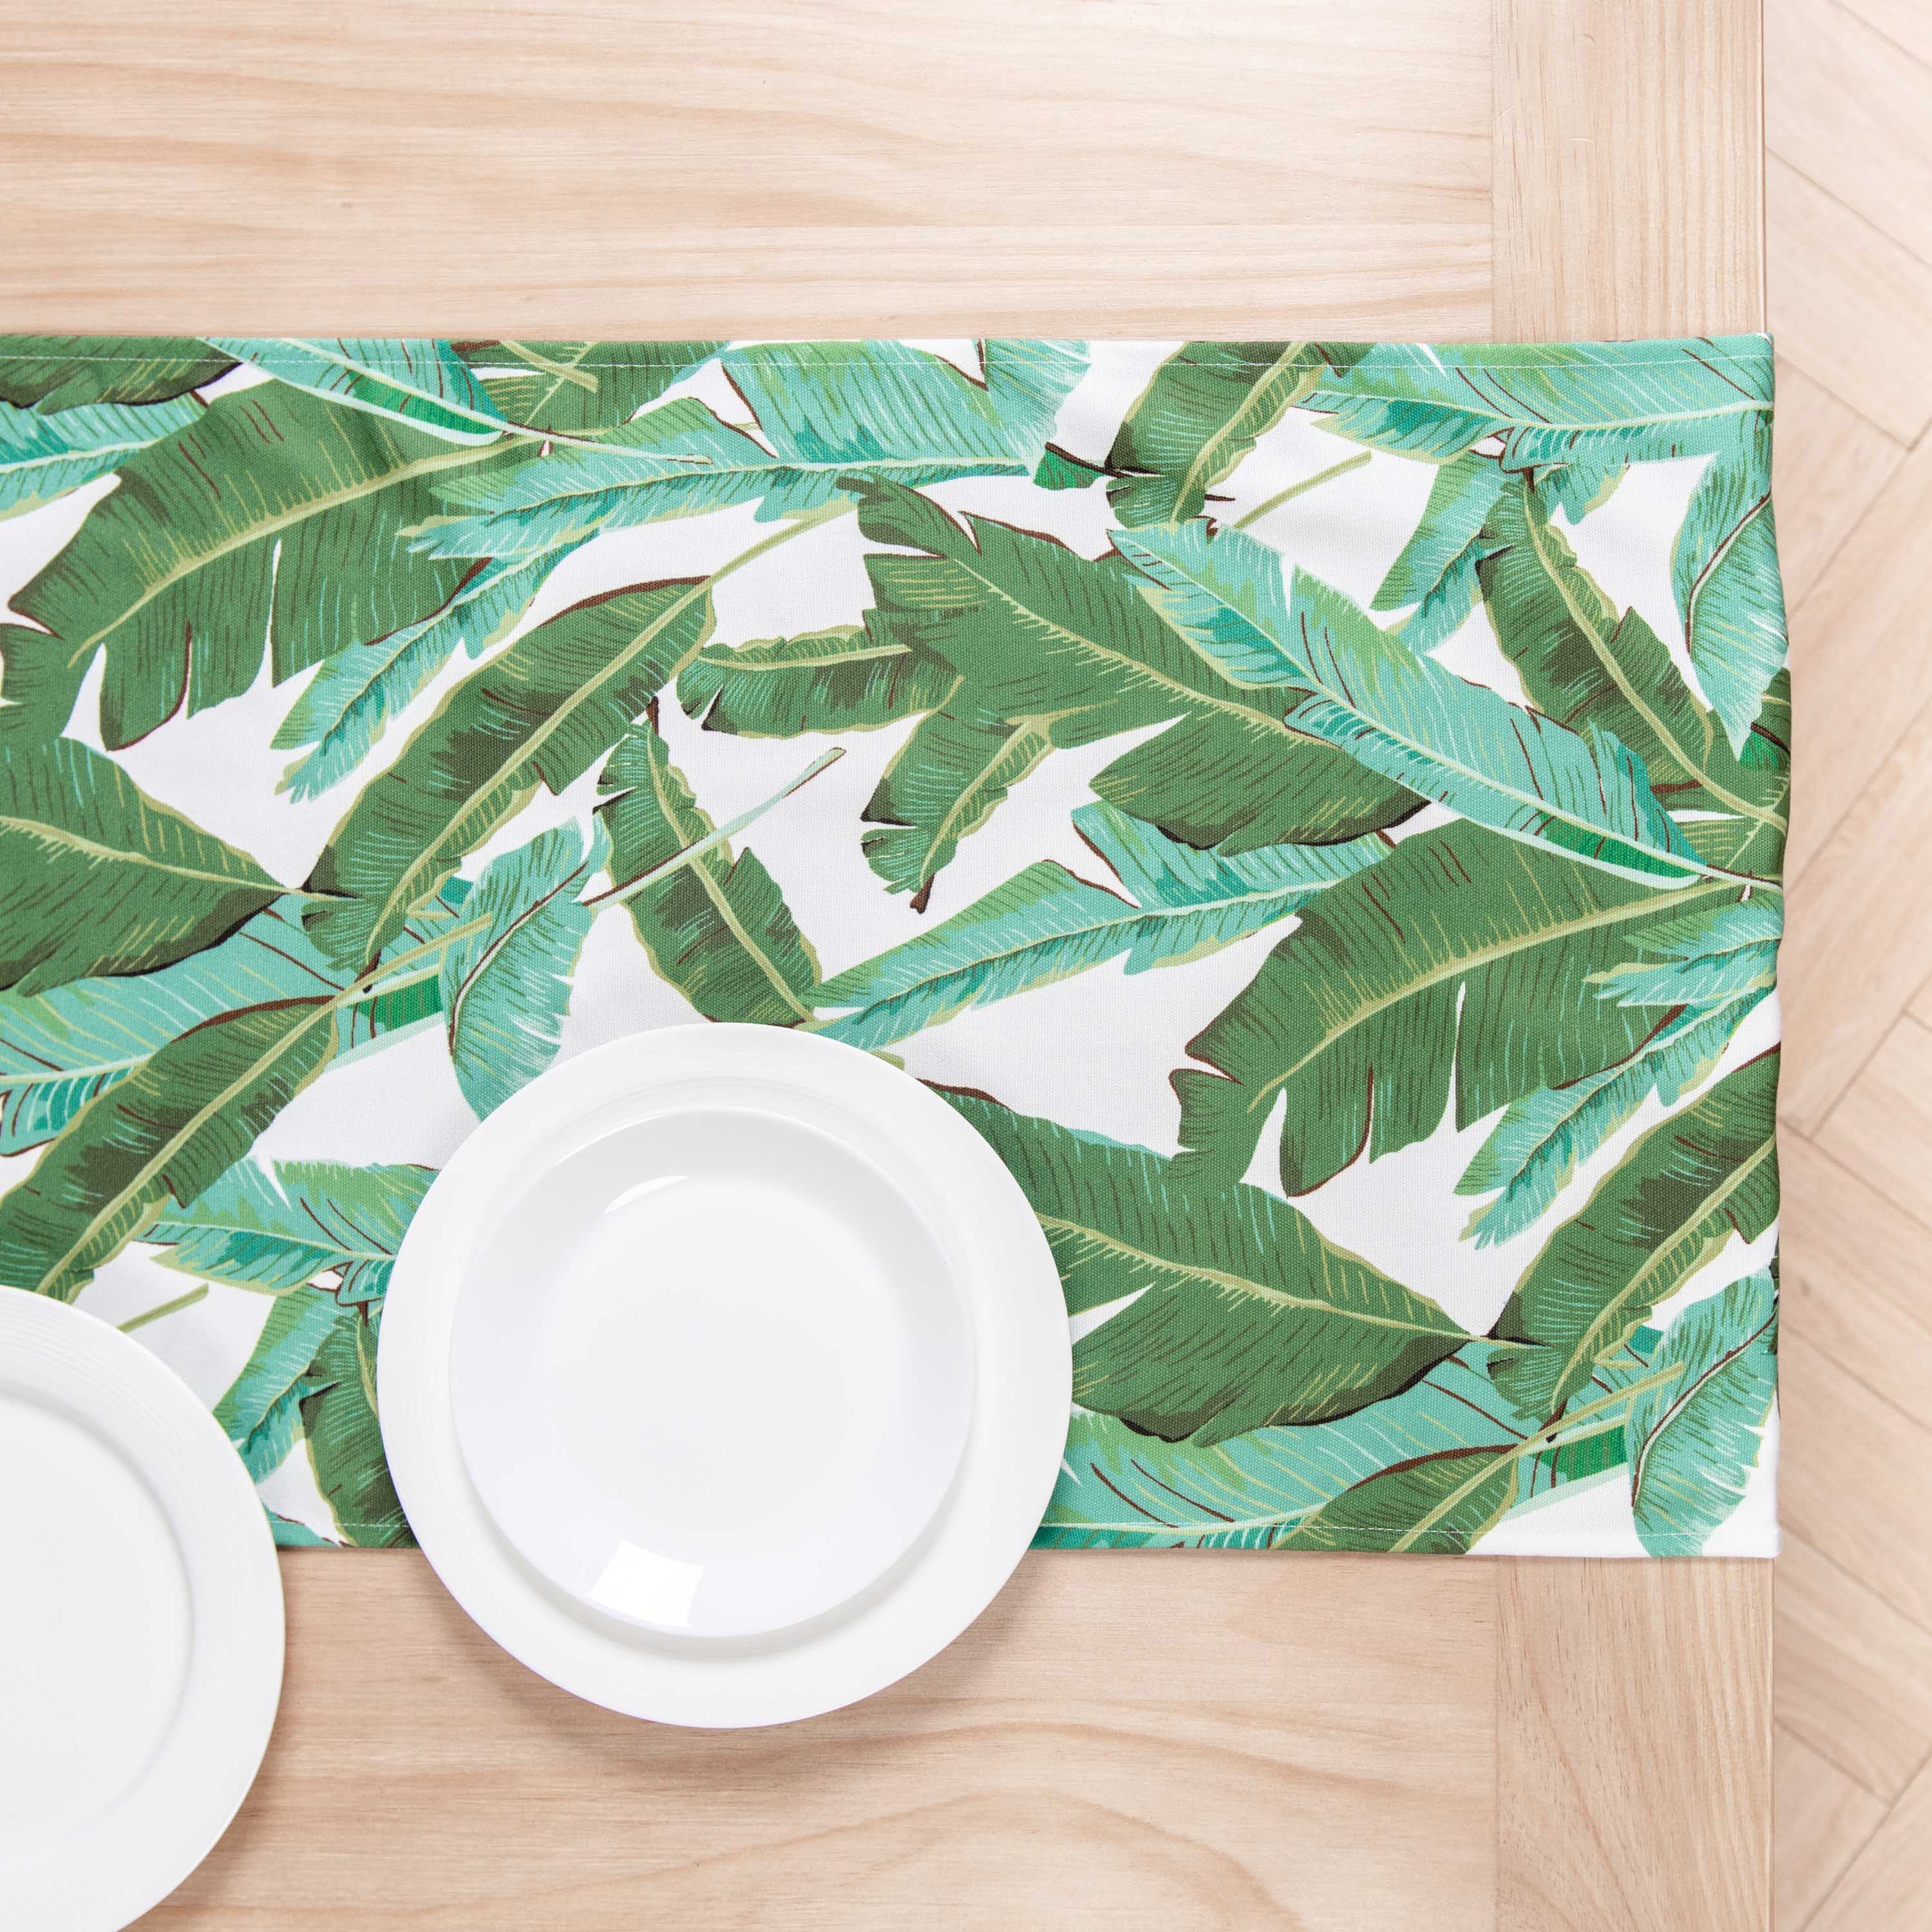 Tropical Table Runner, Banana Leaves, Green, 18"x72"